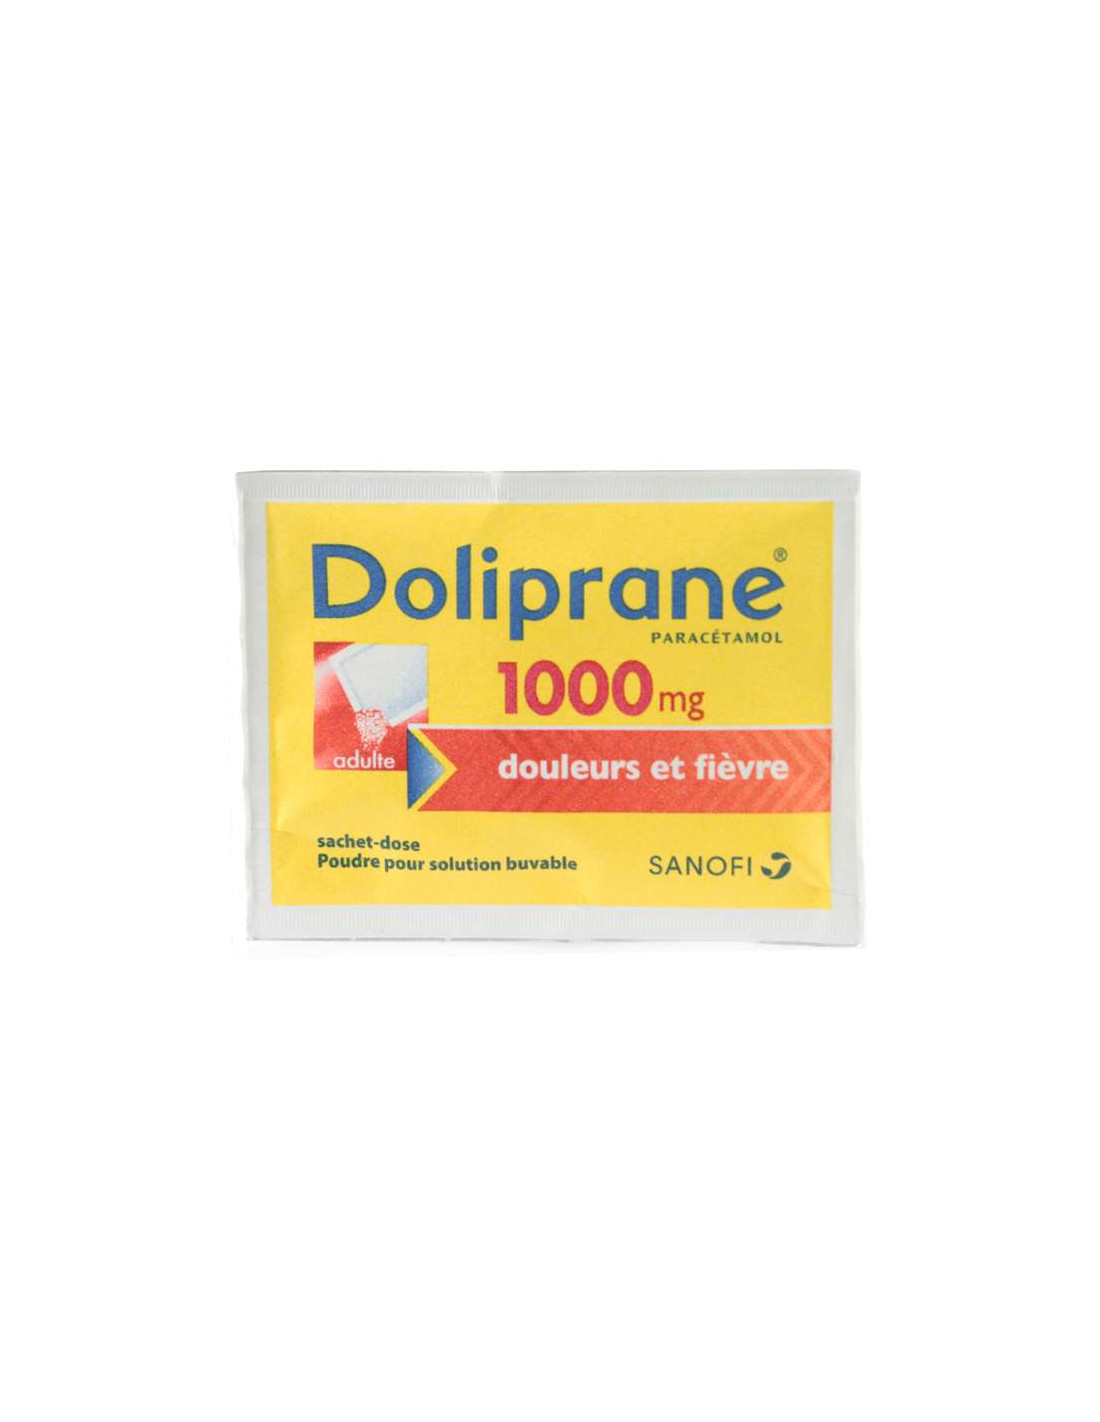 Doliprane Paracétamol 1000 mg Douleurs & Fièvre 8 sachets dose poudre -  Archange-pharmacom